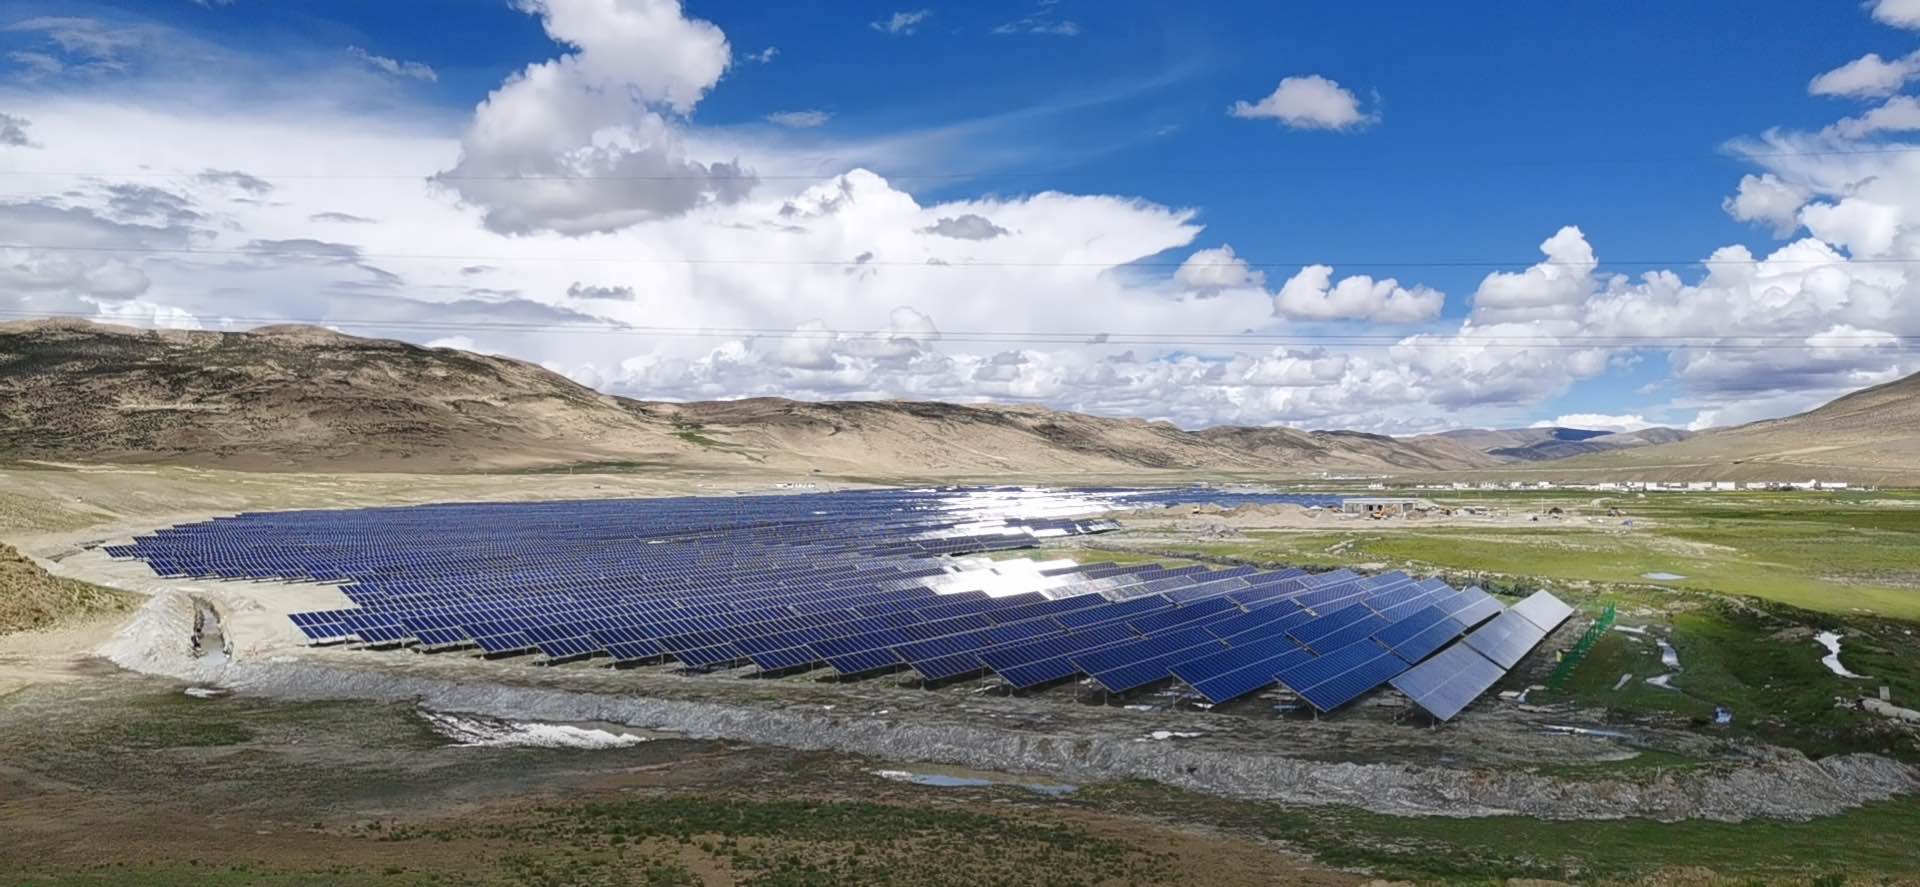 Shigatse Tibet China 40 MW Project